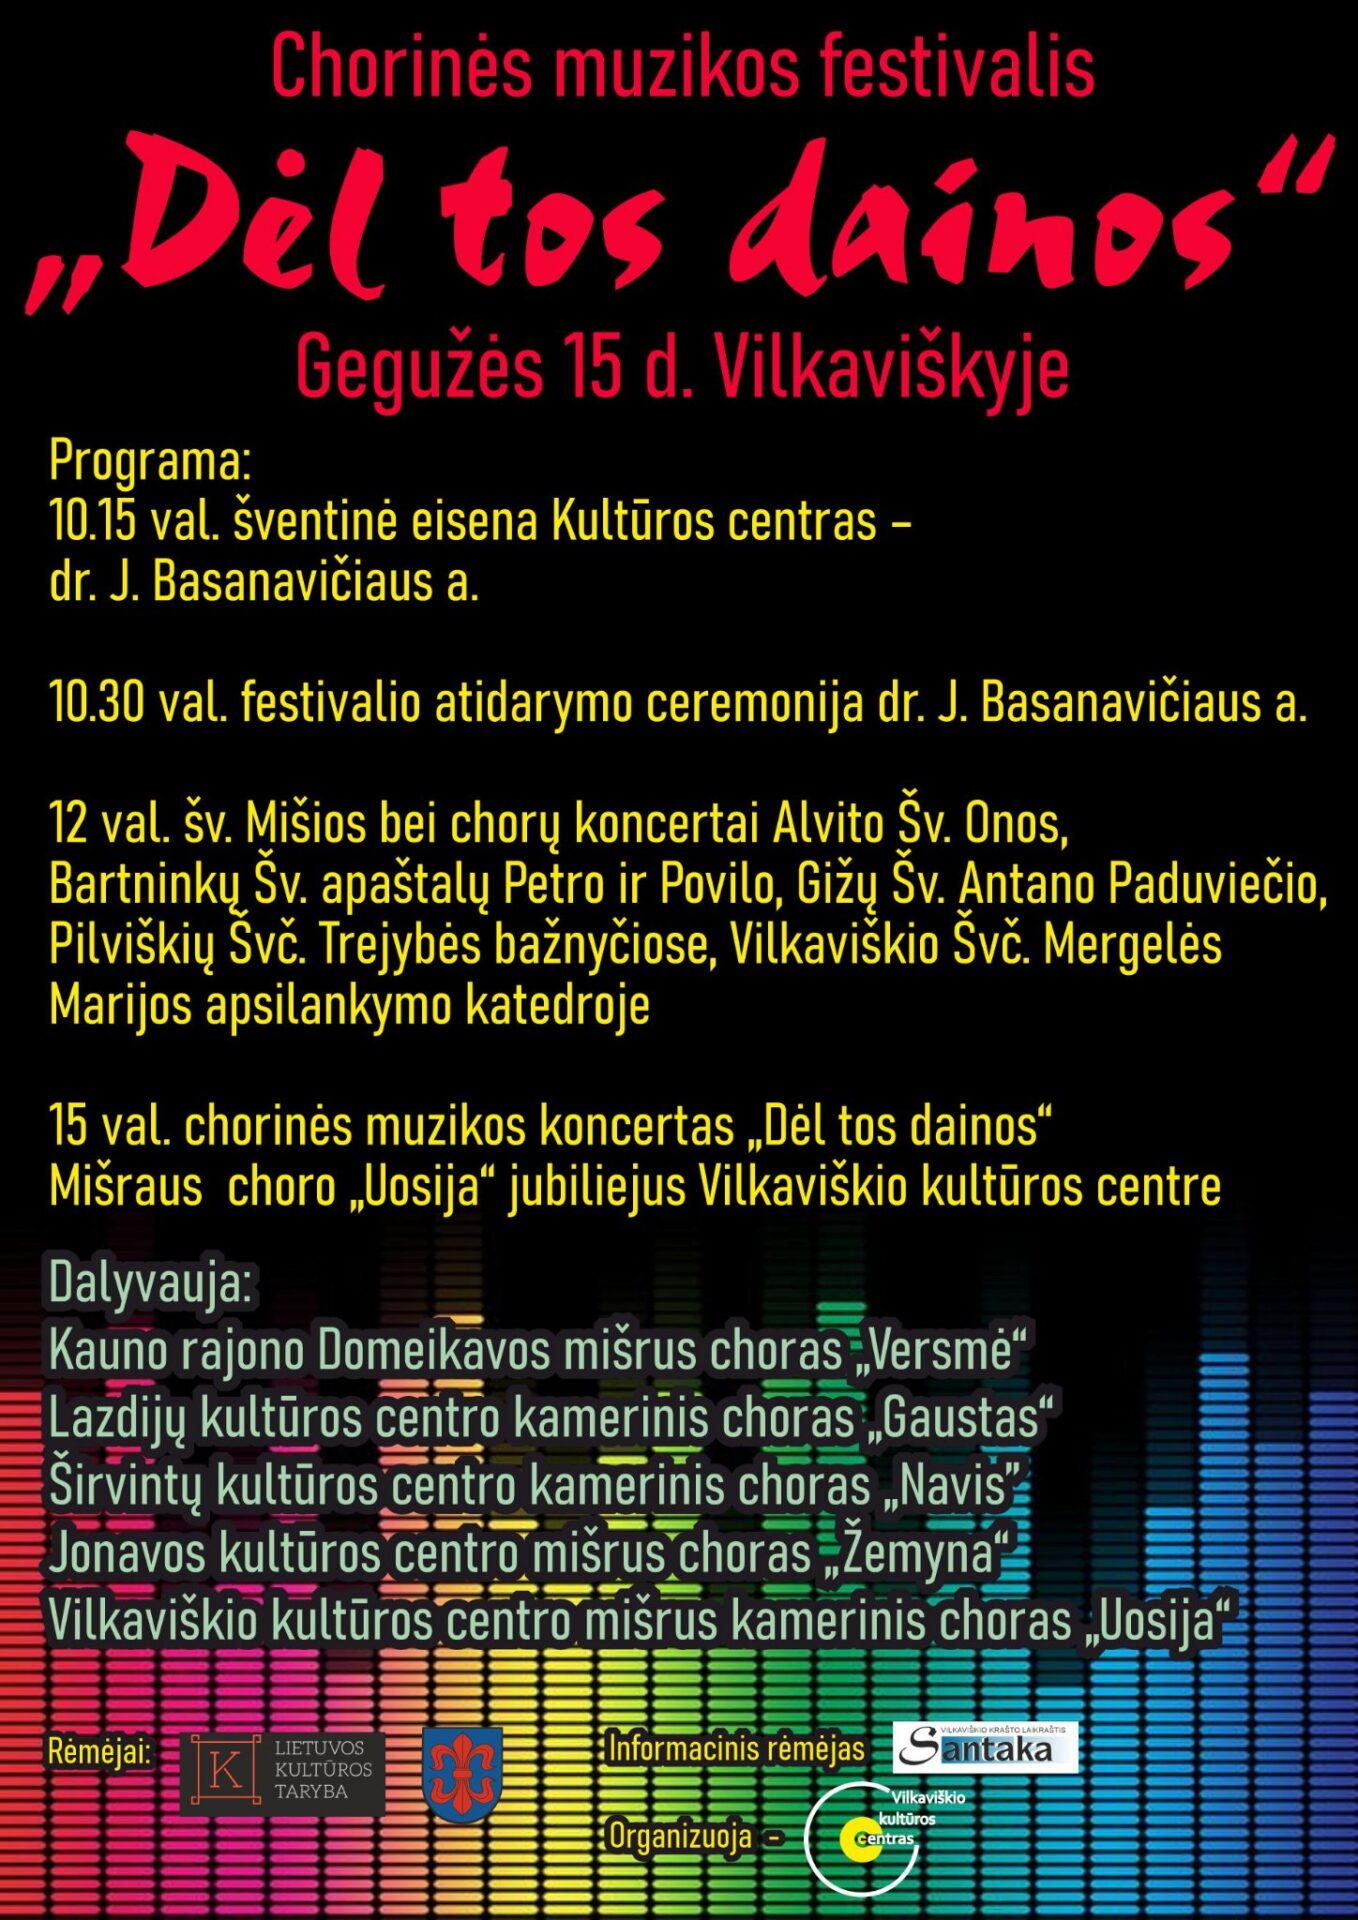 Chorinės muzikos festivalis Vilkaviškyje